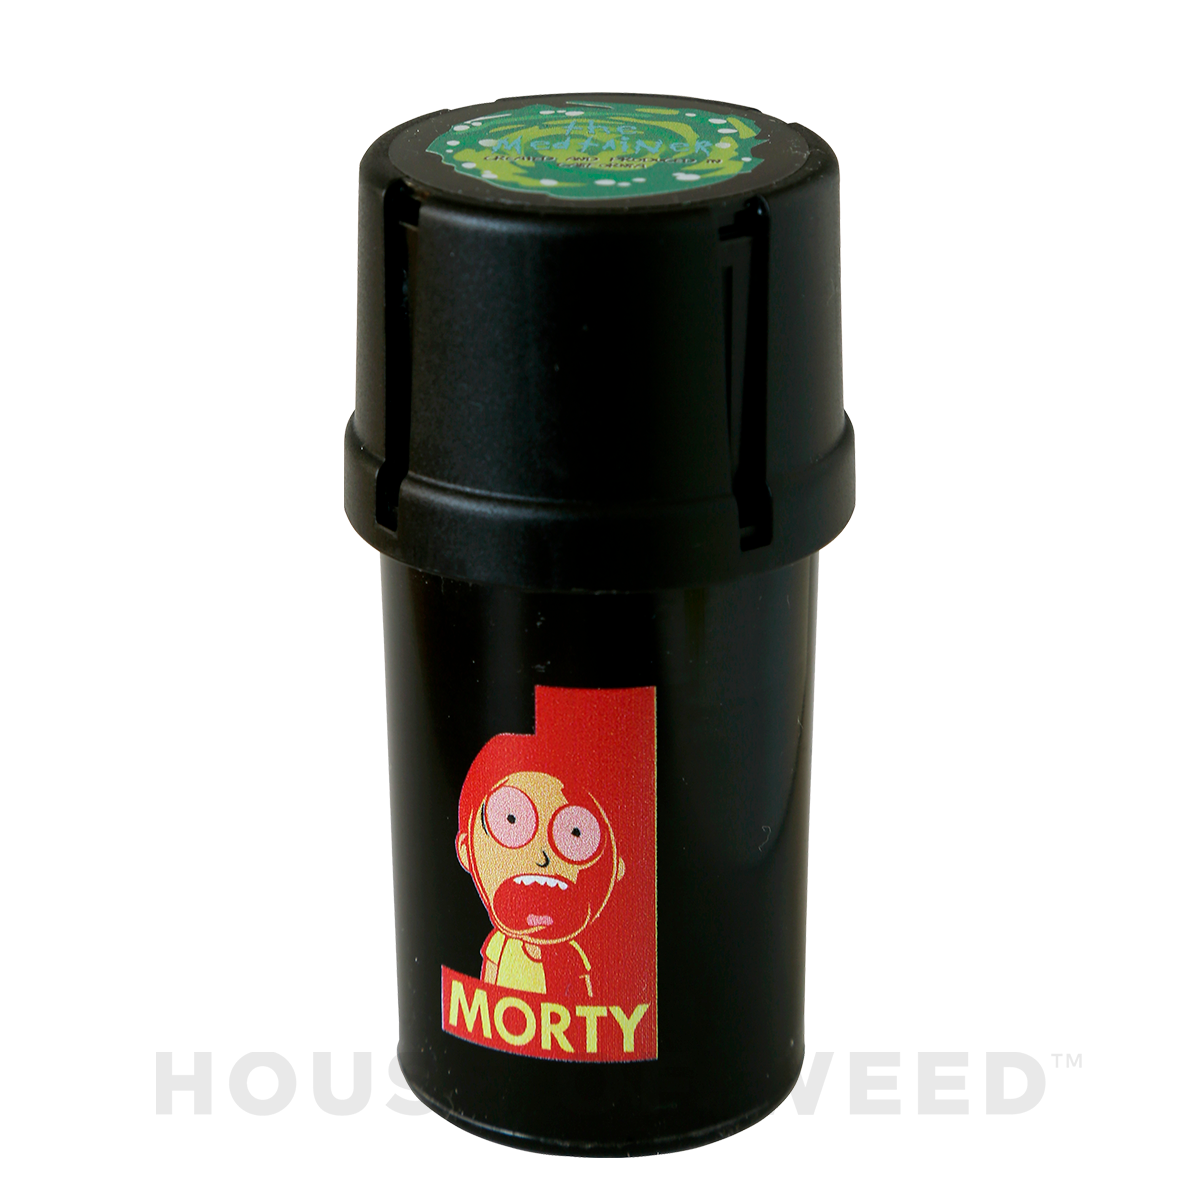 moledor y contenedor de la marca Medtainer color negro con la figura de Morty